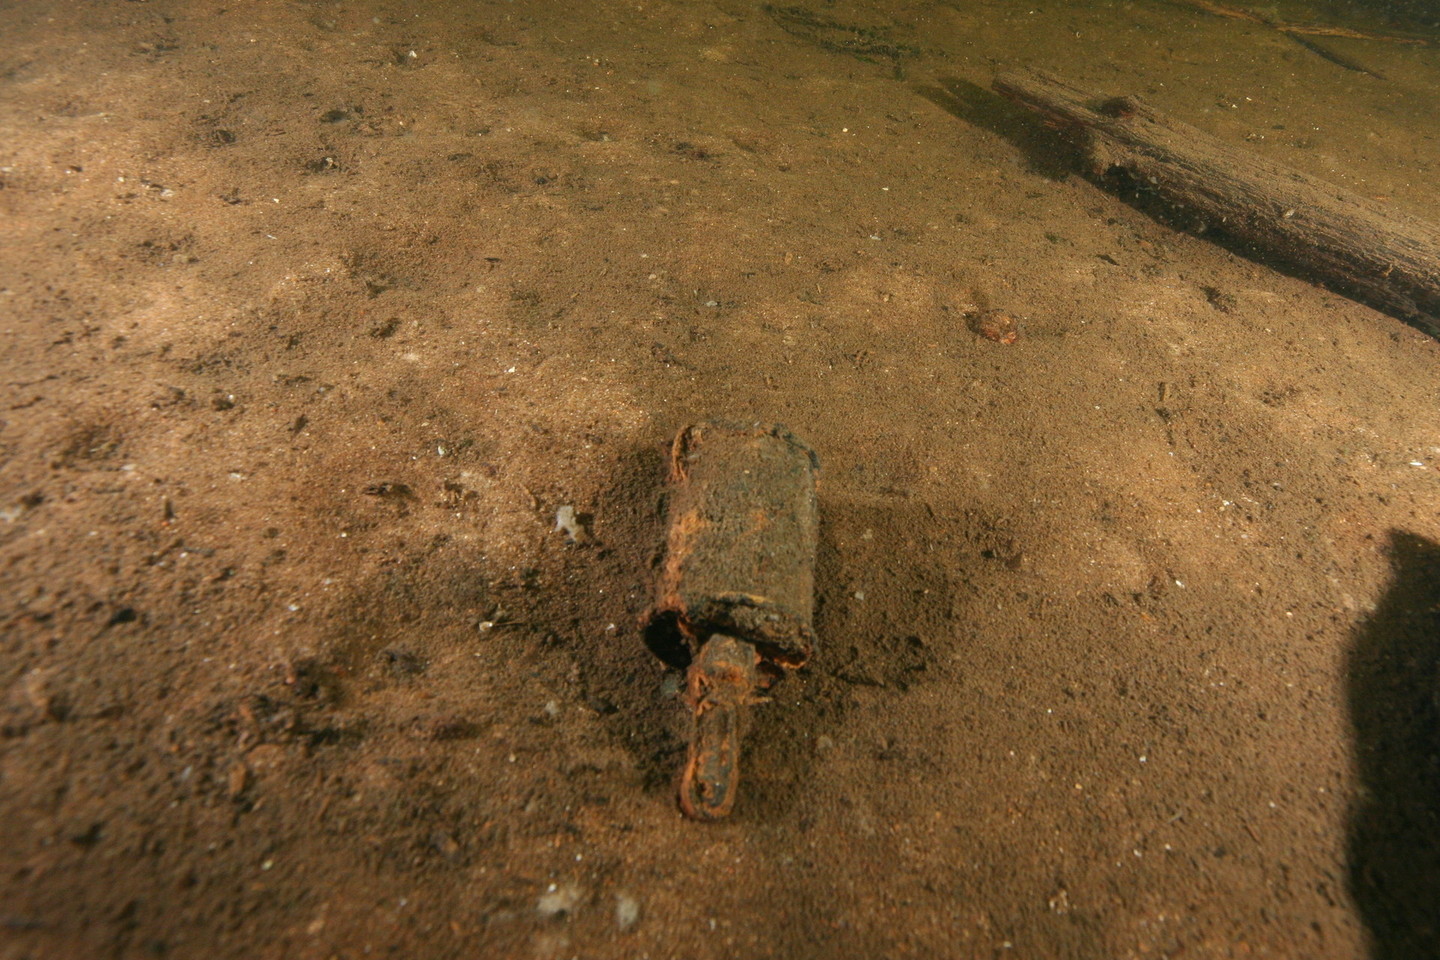 Ketvirtadienį atnaujinus sprogmenų paiešką, ežero dugne rasta ir rankinė granata, labai panaši į šią, fotografuotą anksčiau.<br>G.Krakausko nuotr.